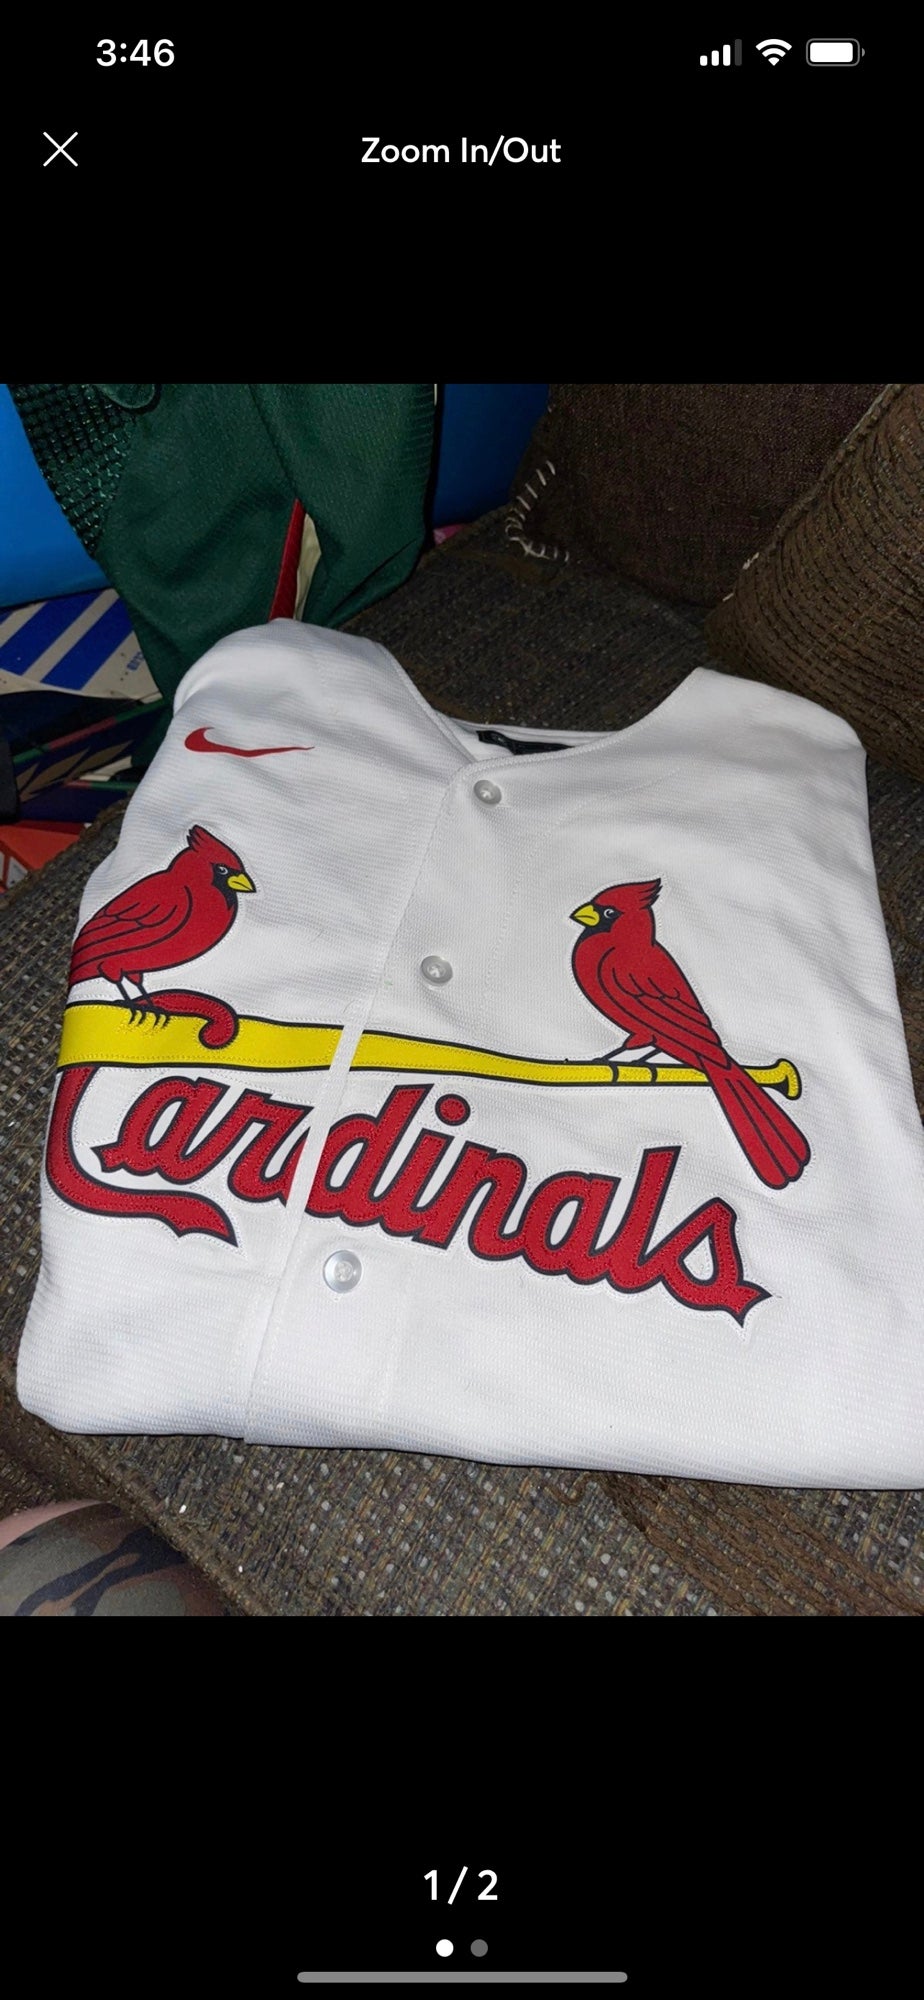 cardinals mlb jerseys